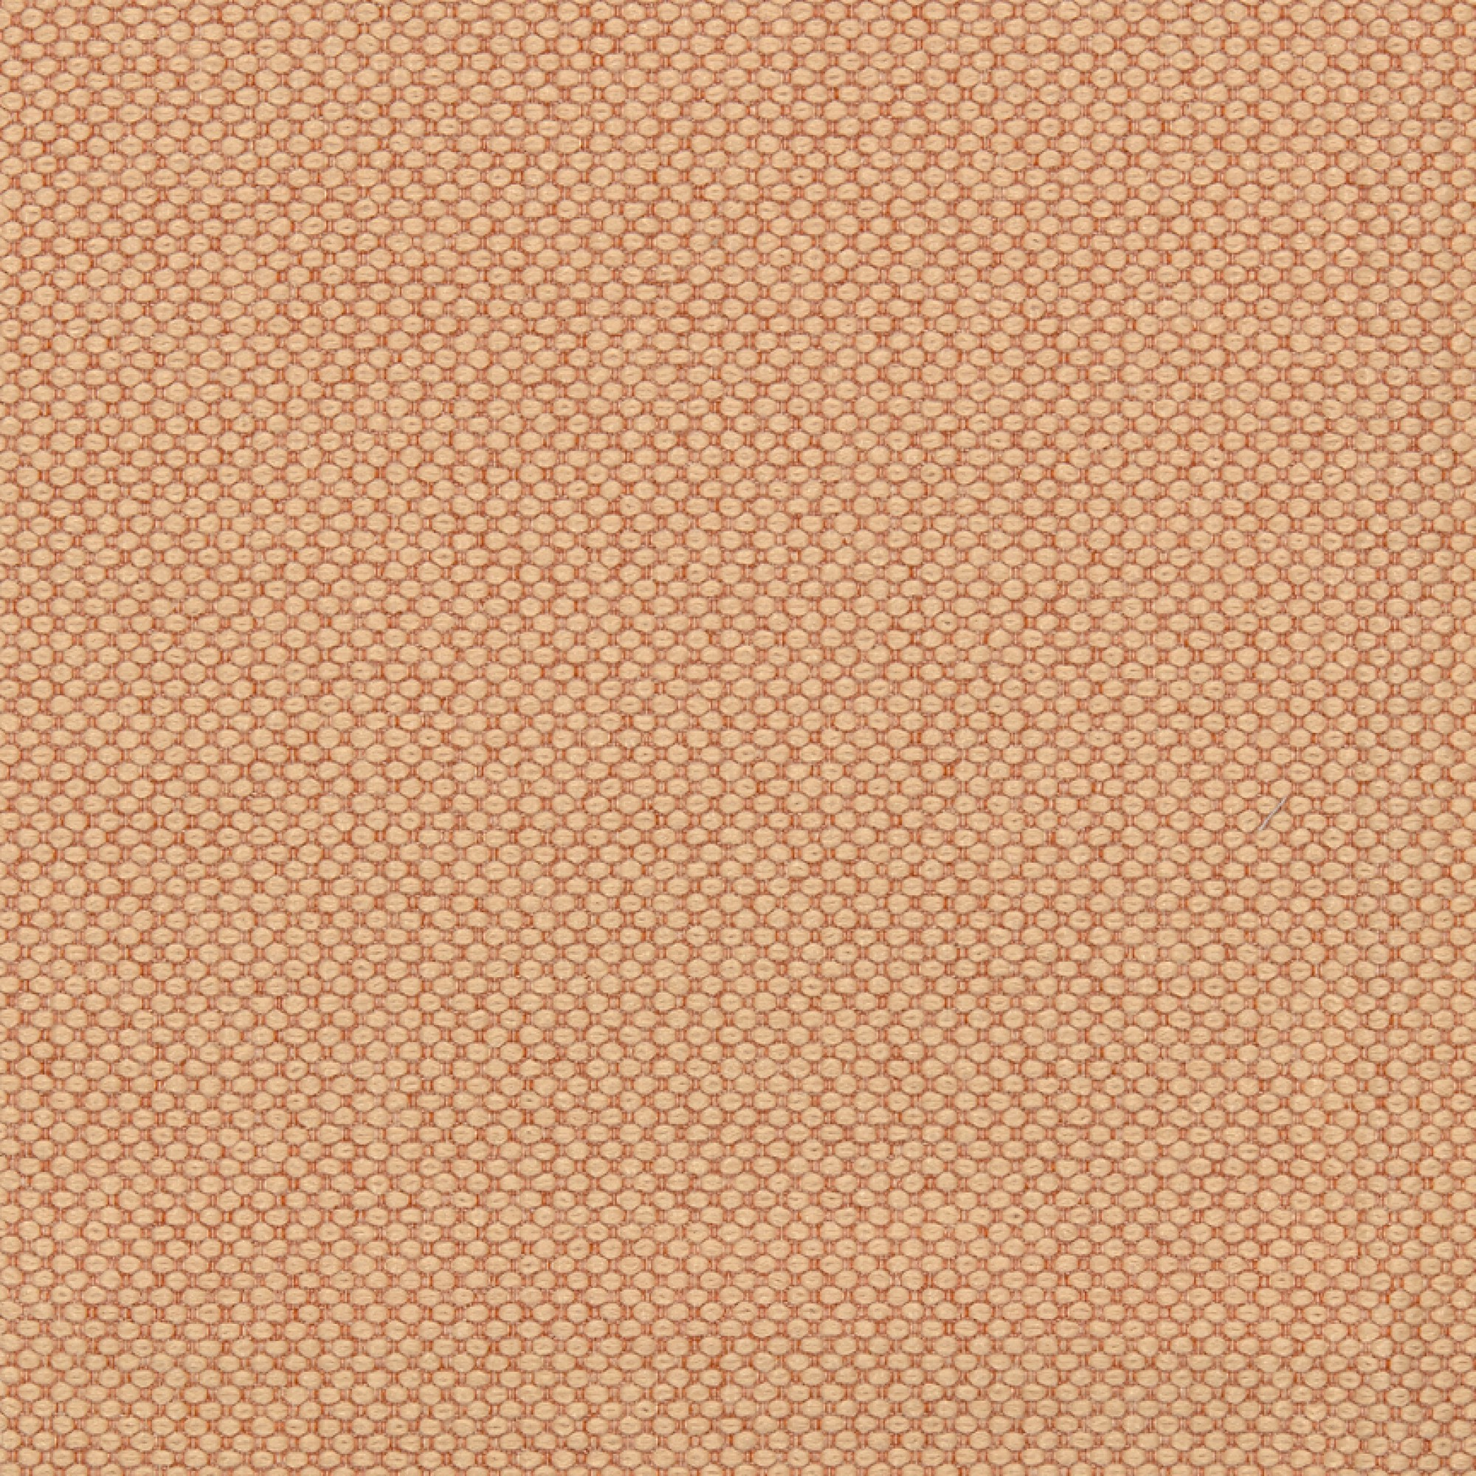 Fabric sample Merit 0031 orange